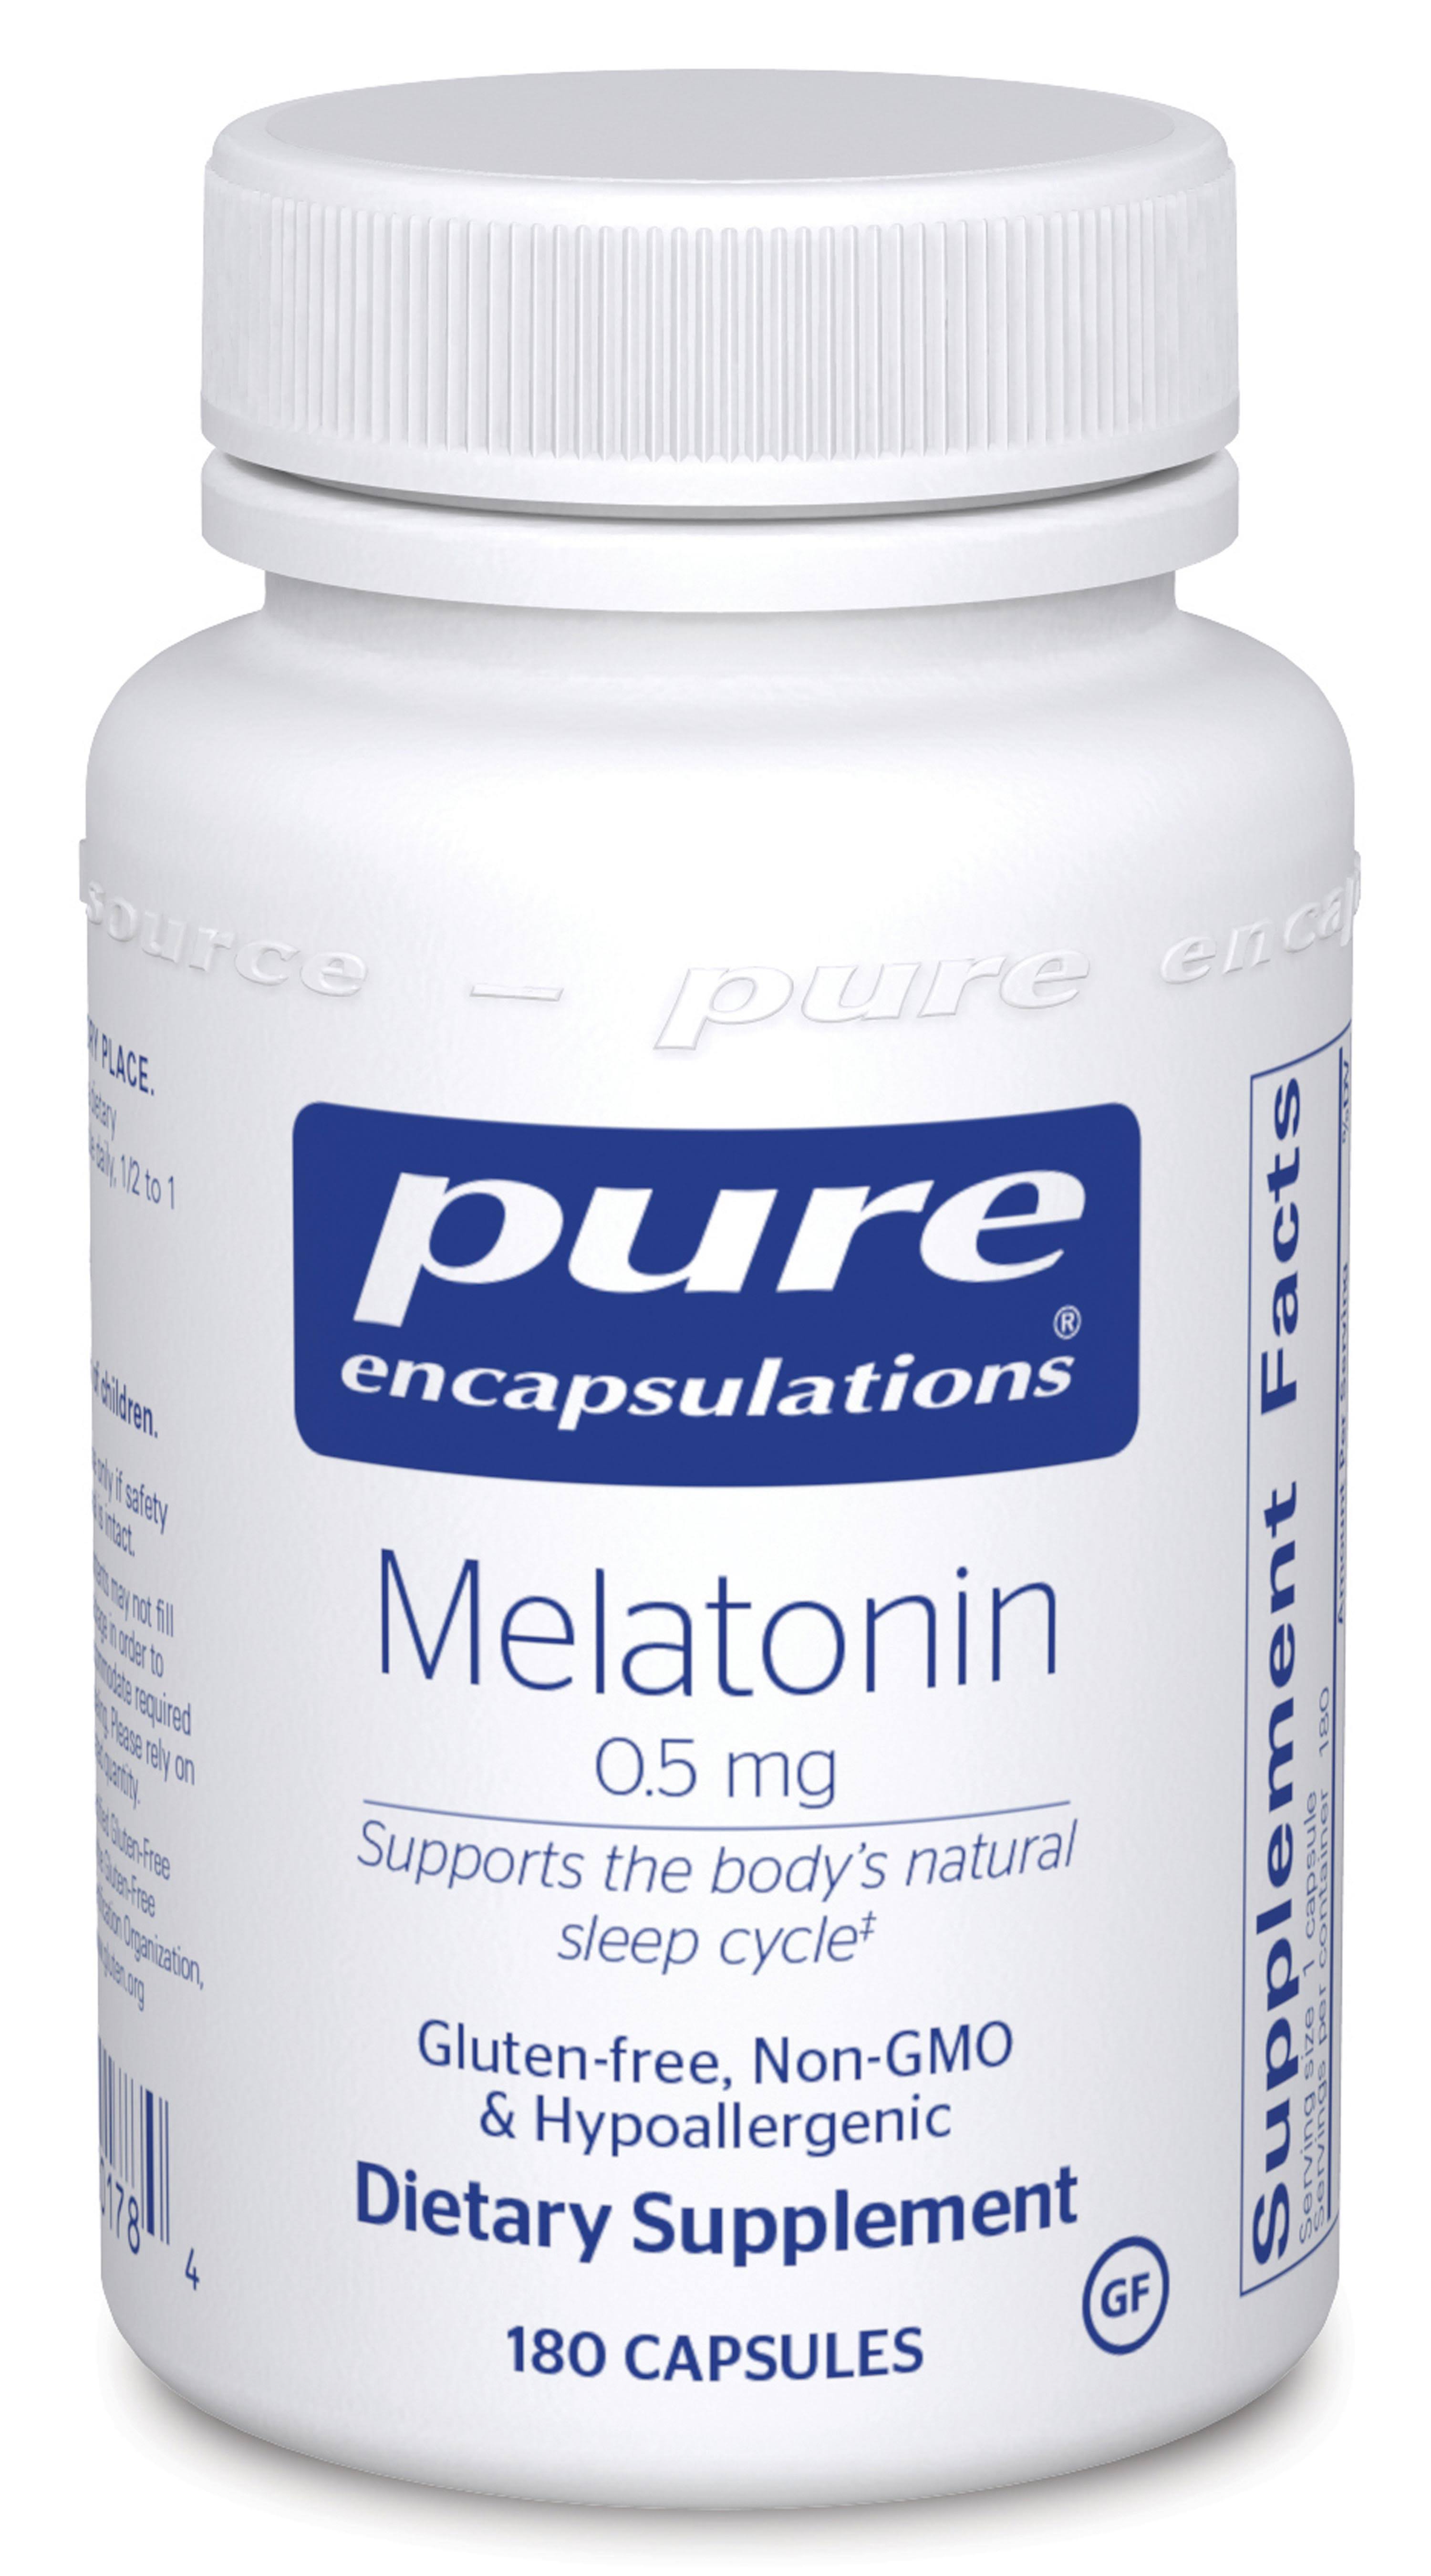 Pure Encapsulations Melatonin Dietary Supplement - 180 Capsules